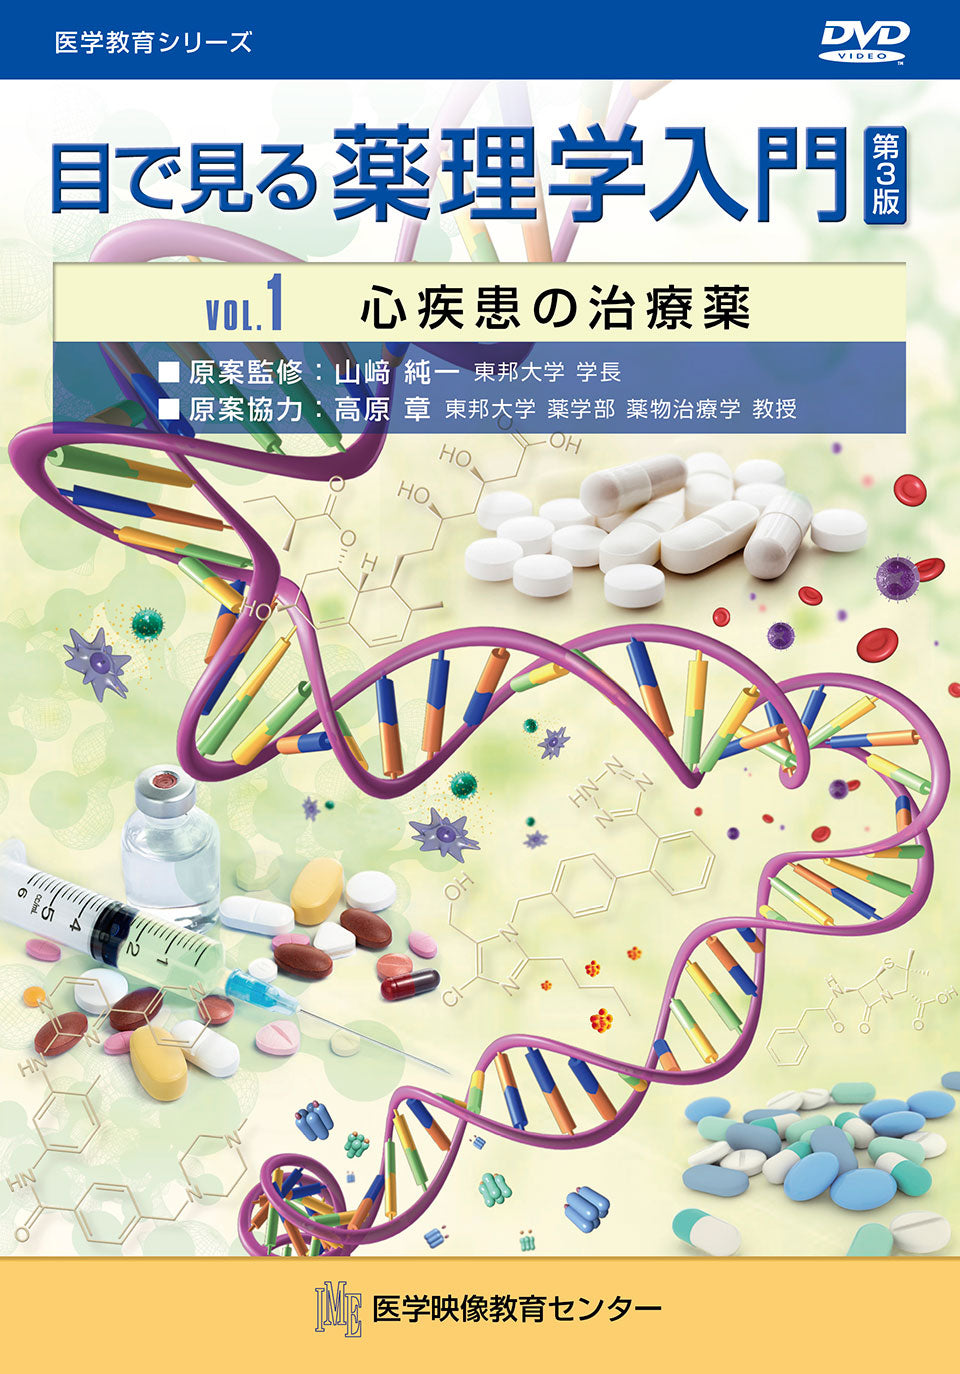 【全巻セット】目で見る薬理学入門 第3版DVD12巻